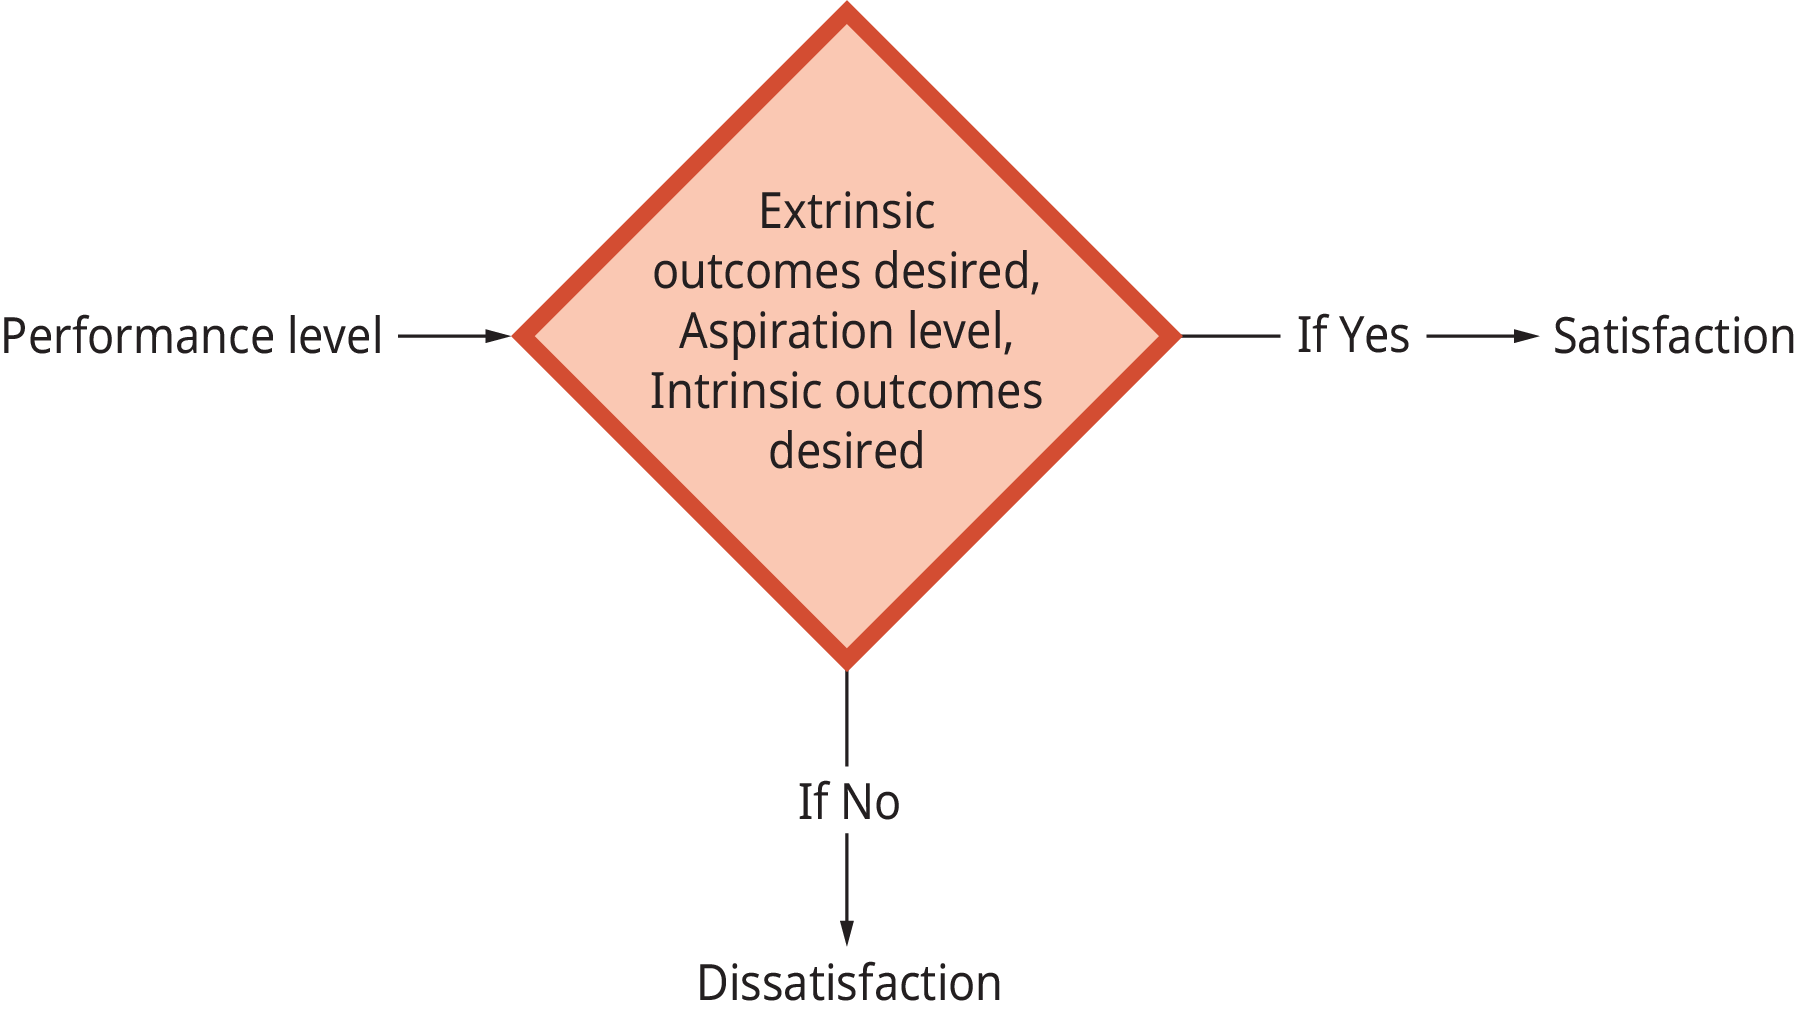 Un diagrama ilustra cómo el nivel de desempeño determina la satisfacción laboral.